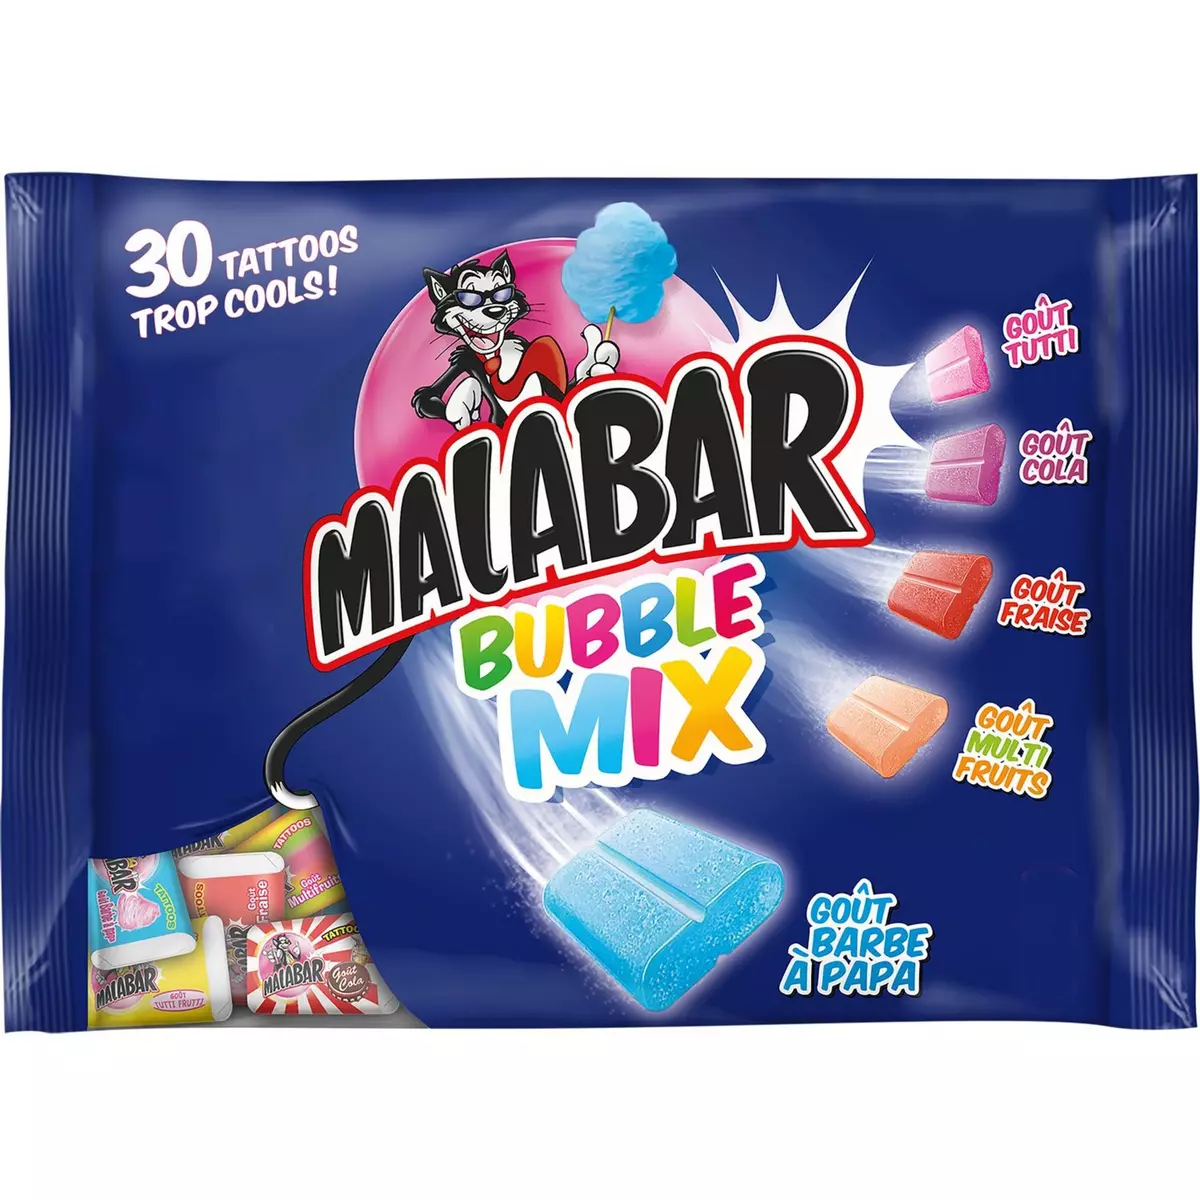 MALABAR Bubble mix assortiment de chewing-gums 30 chewing-gums 214g